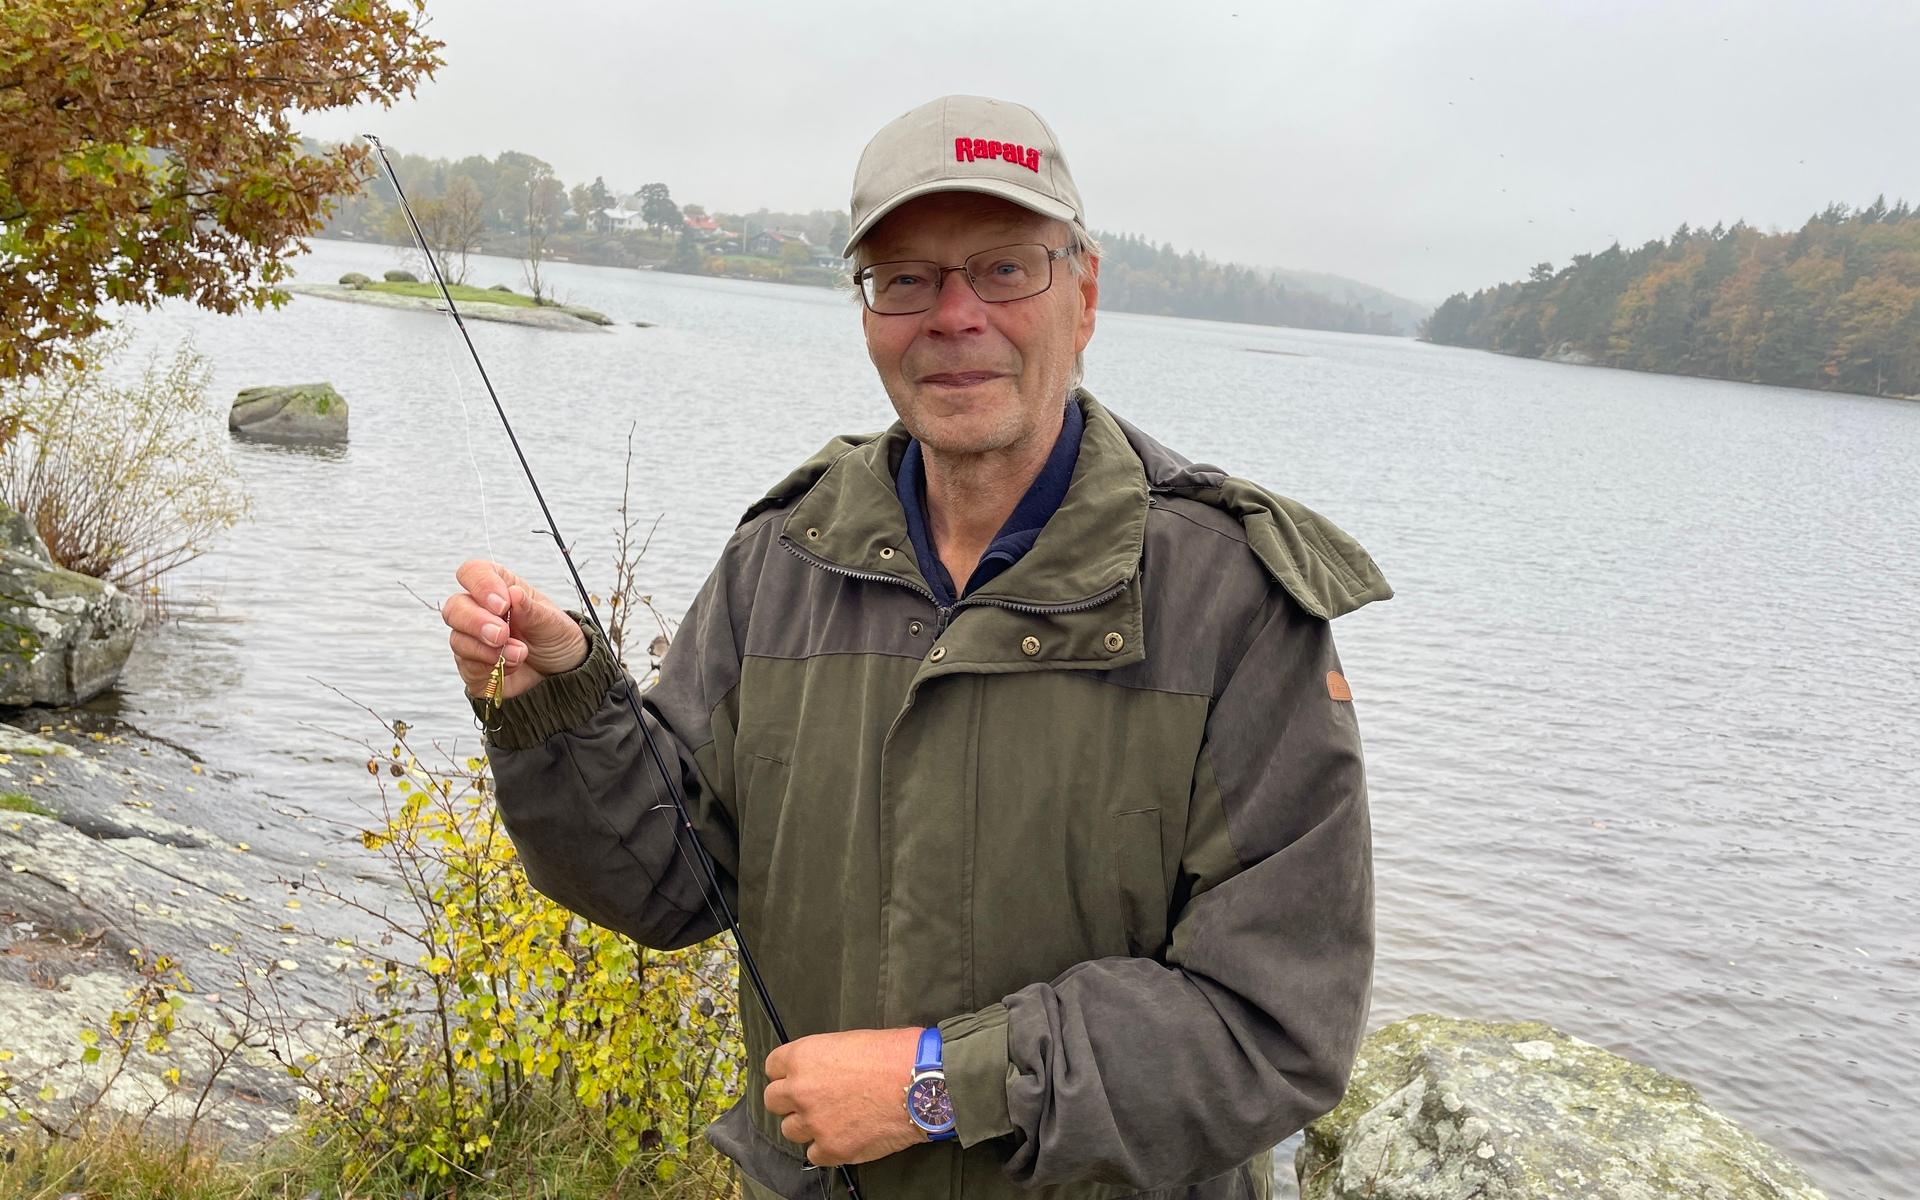 ”Det är många som börjar fiska under pandemin” säger Lennart Larsson.